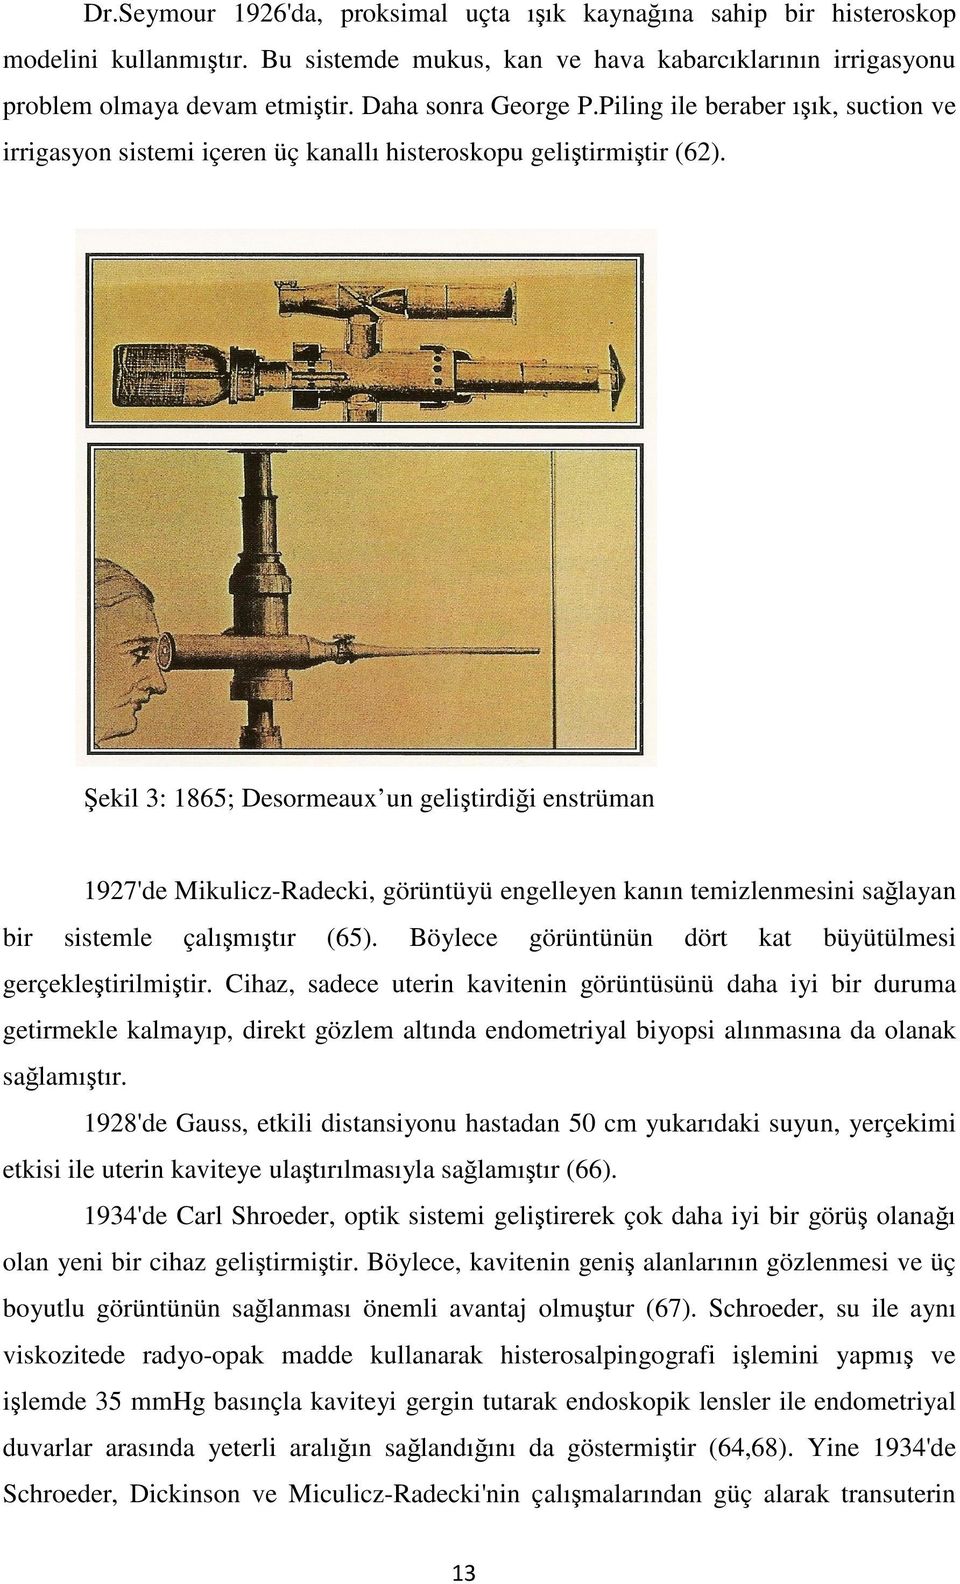 Şekil 3: 1865; Desormeaux un geliştirdiği enstrüman 1927'de Mikulicz-Radecki, görüntüyü engelleyen kanın temizlenmesini sağlayan bir sistemle çalışmıştır (65).